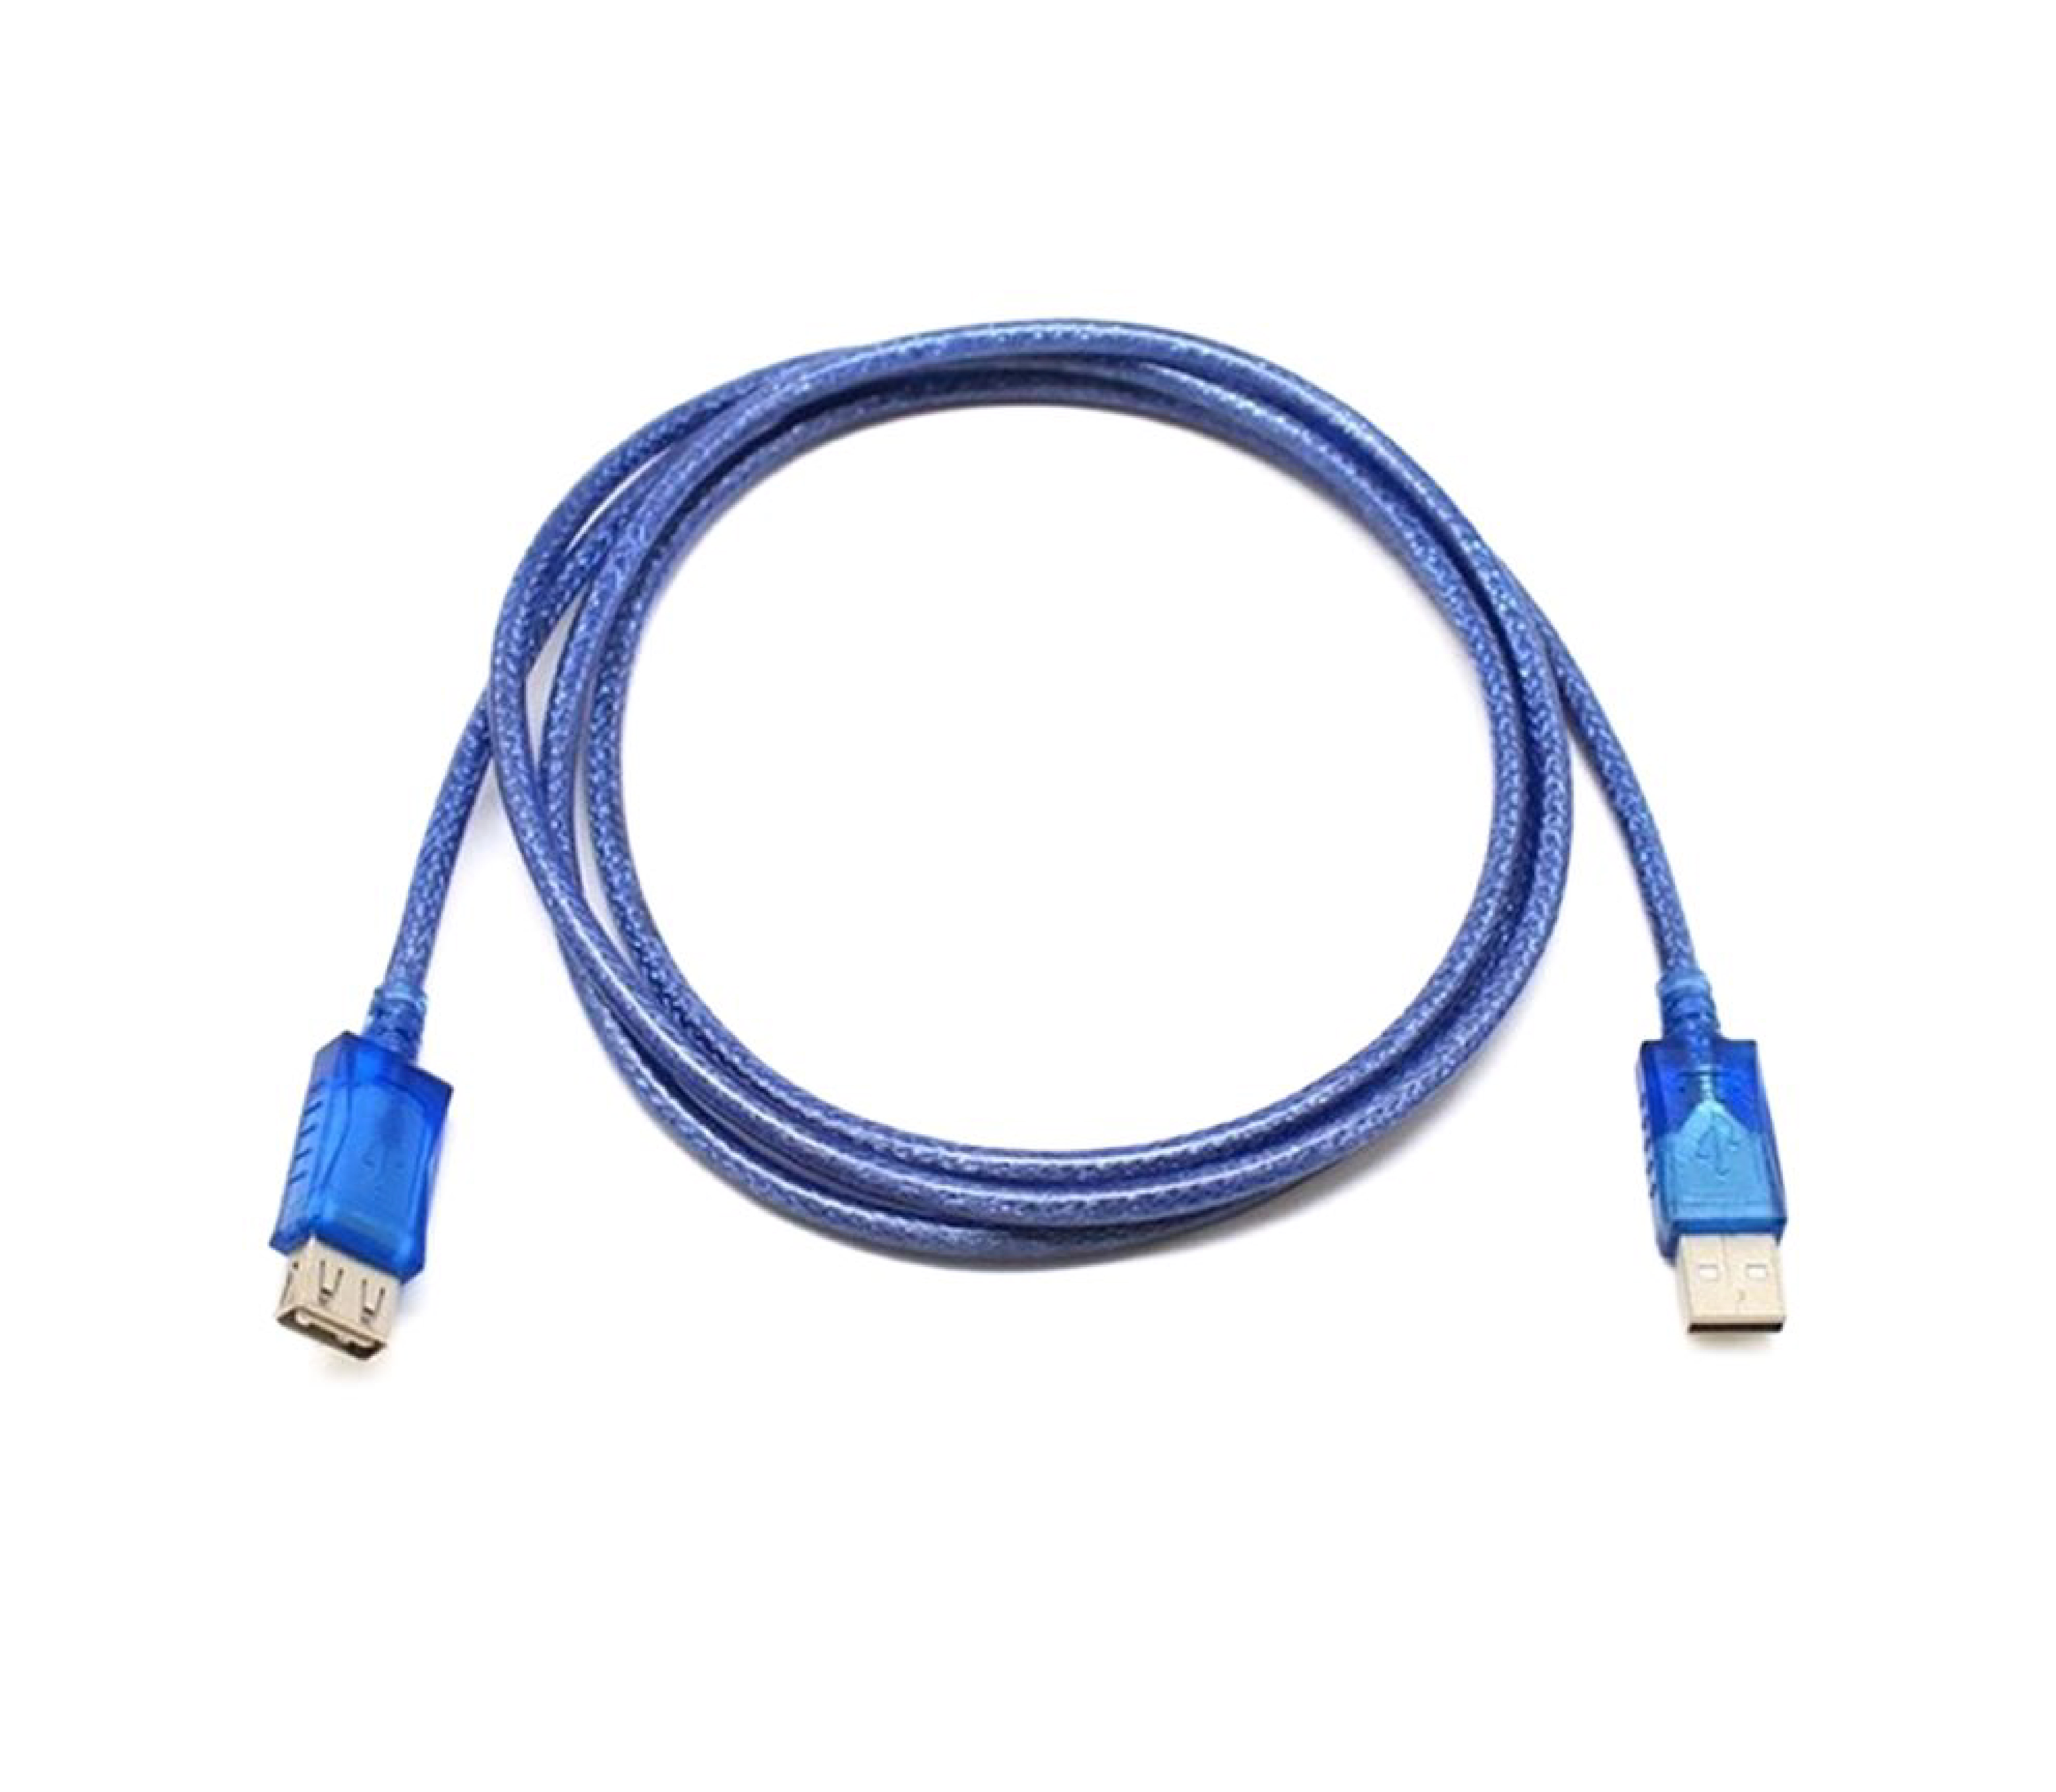 DTECH DT-CU0065 Cable USB Extension 1.8M